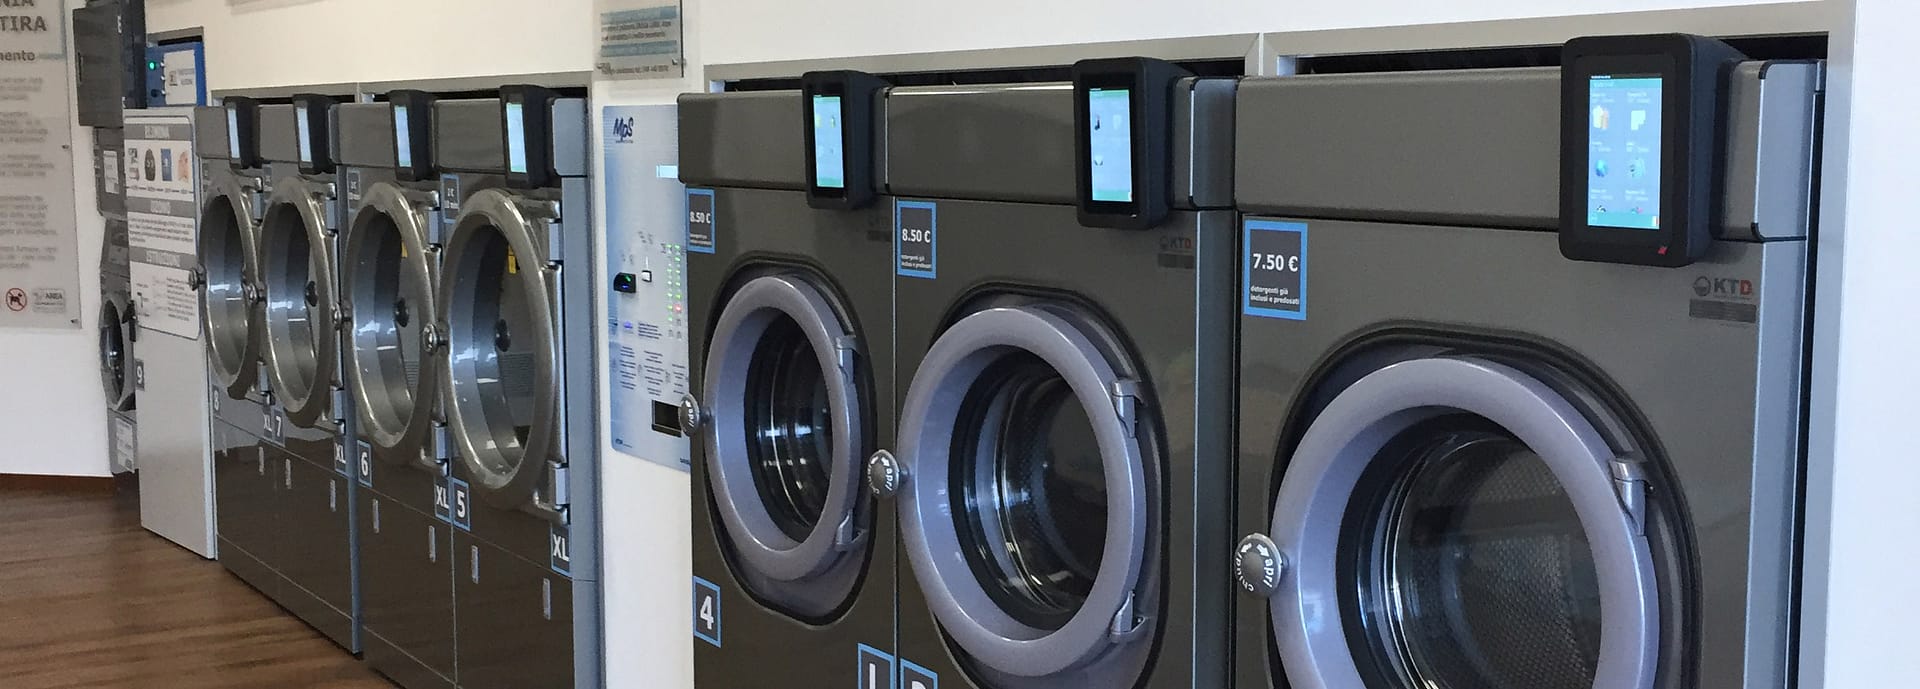 Máquinas de lavar ropa en una lavandería de monedas Fotografía de